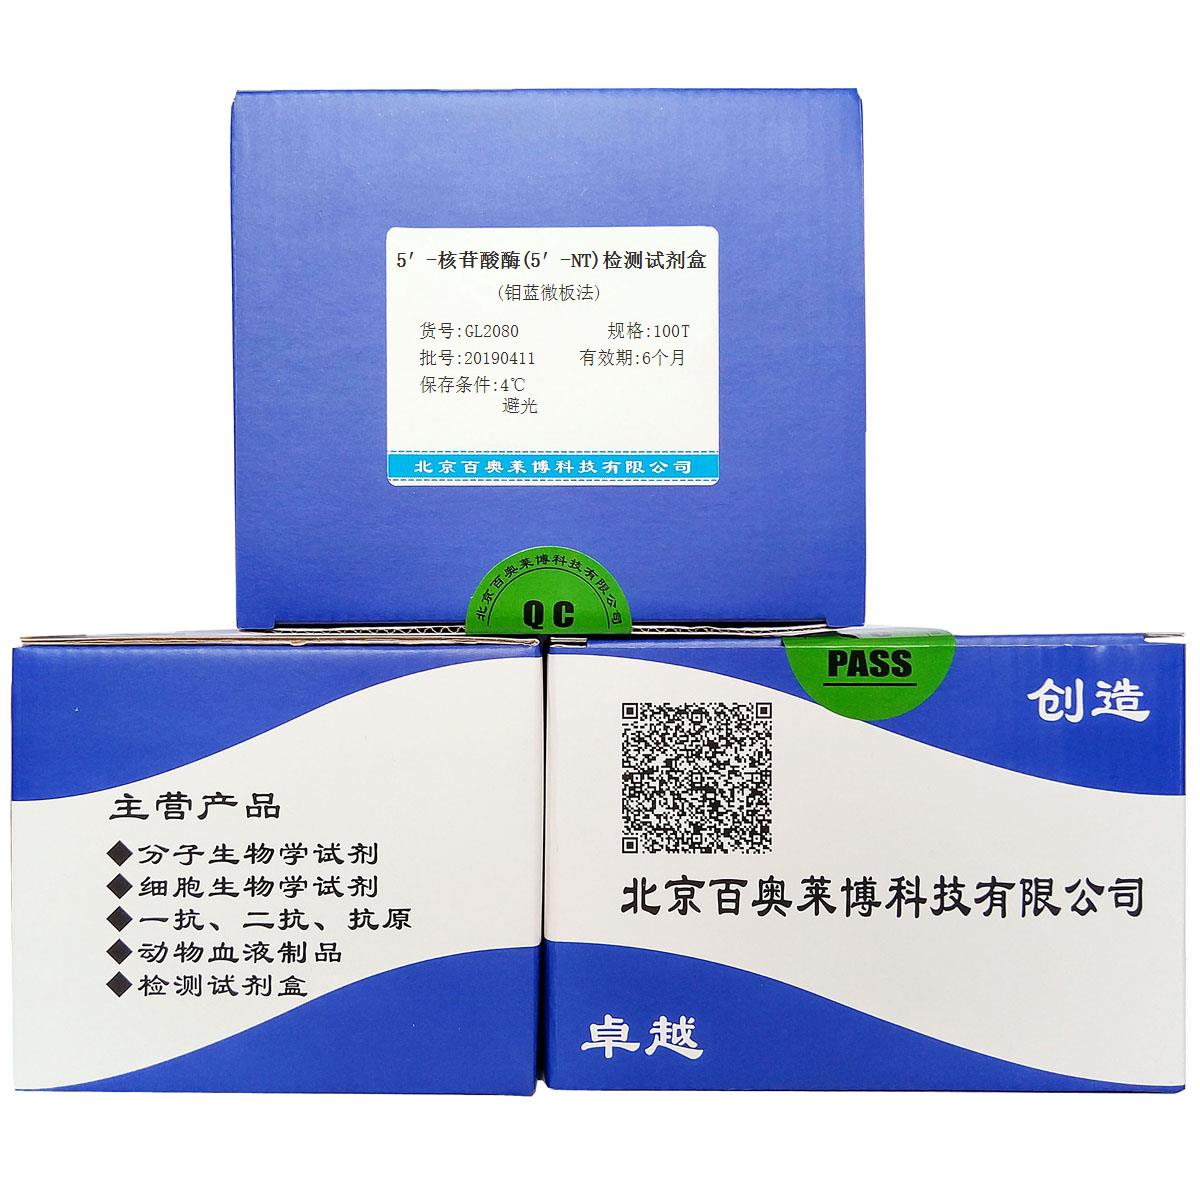 5′-核苷酸酶(5′-NT)检测试剂盒(钼蓝微板法)